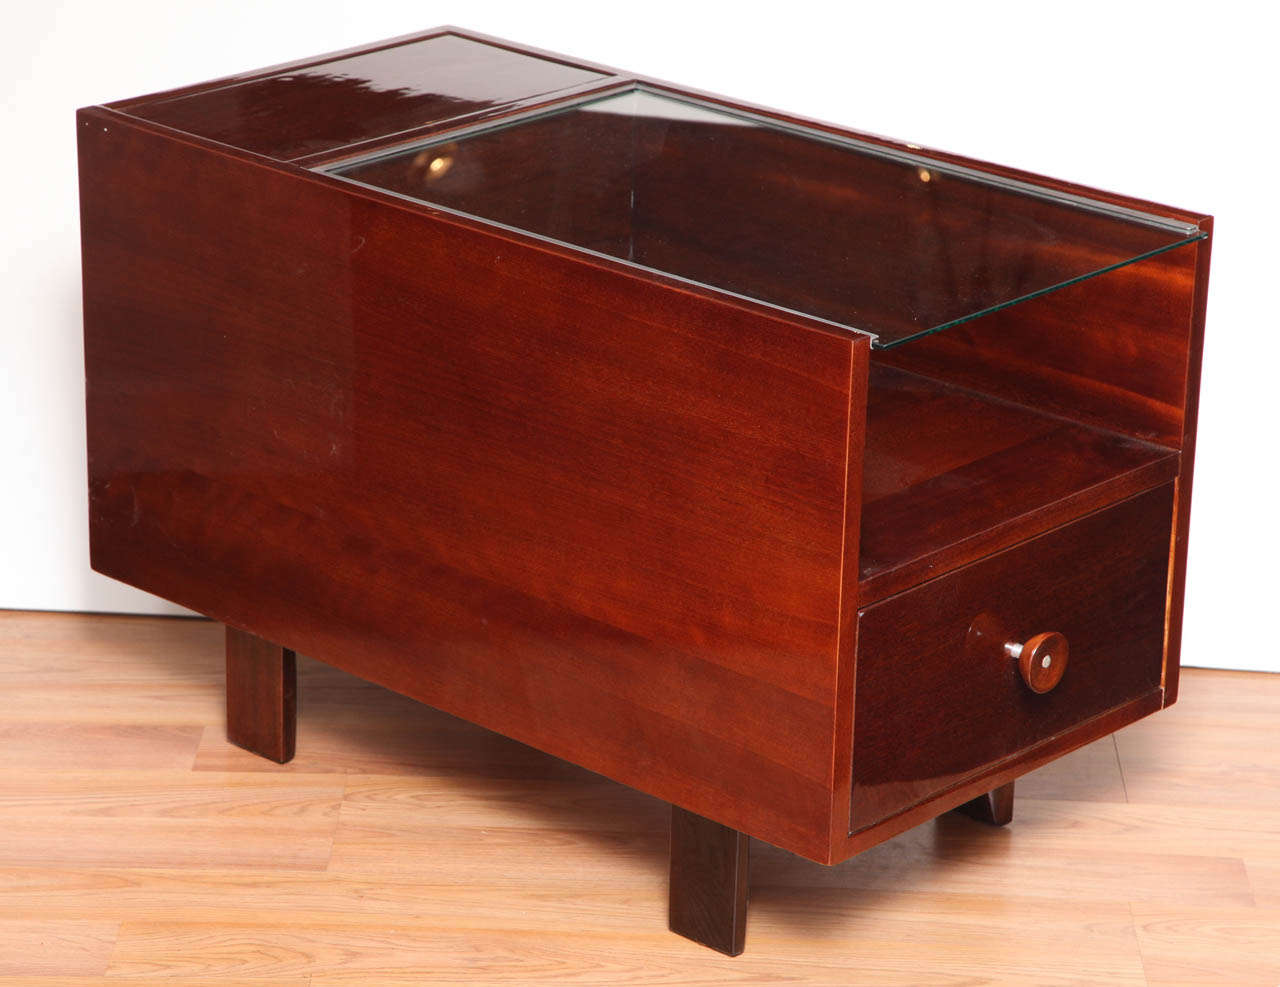 Paire de tables de style Midcentury conçues par George Nelson pour Herman Miller Furniture Company, vers les années 1950.